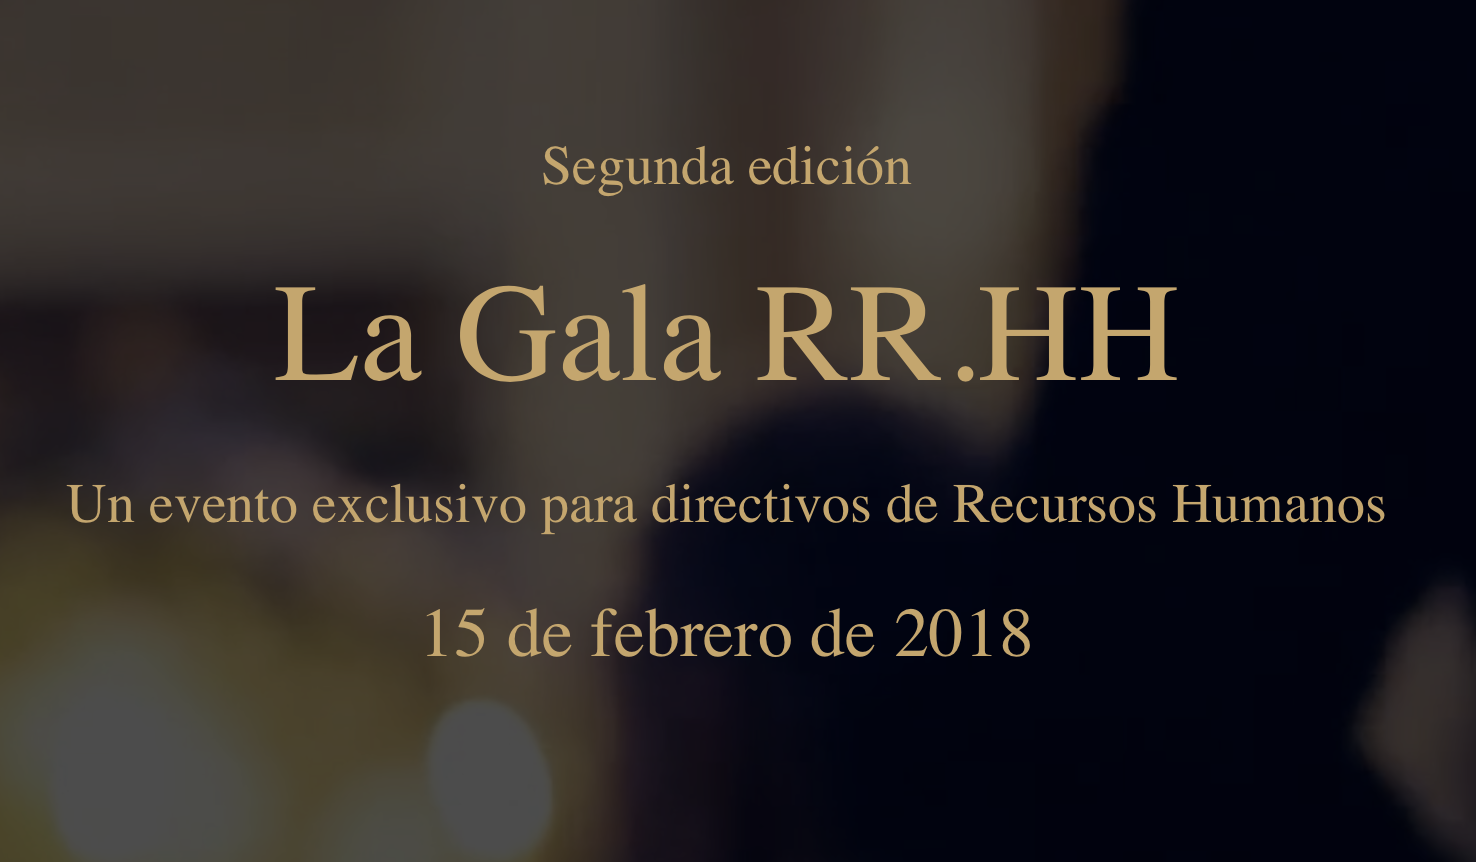 La Gala de RRHH 2018